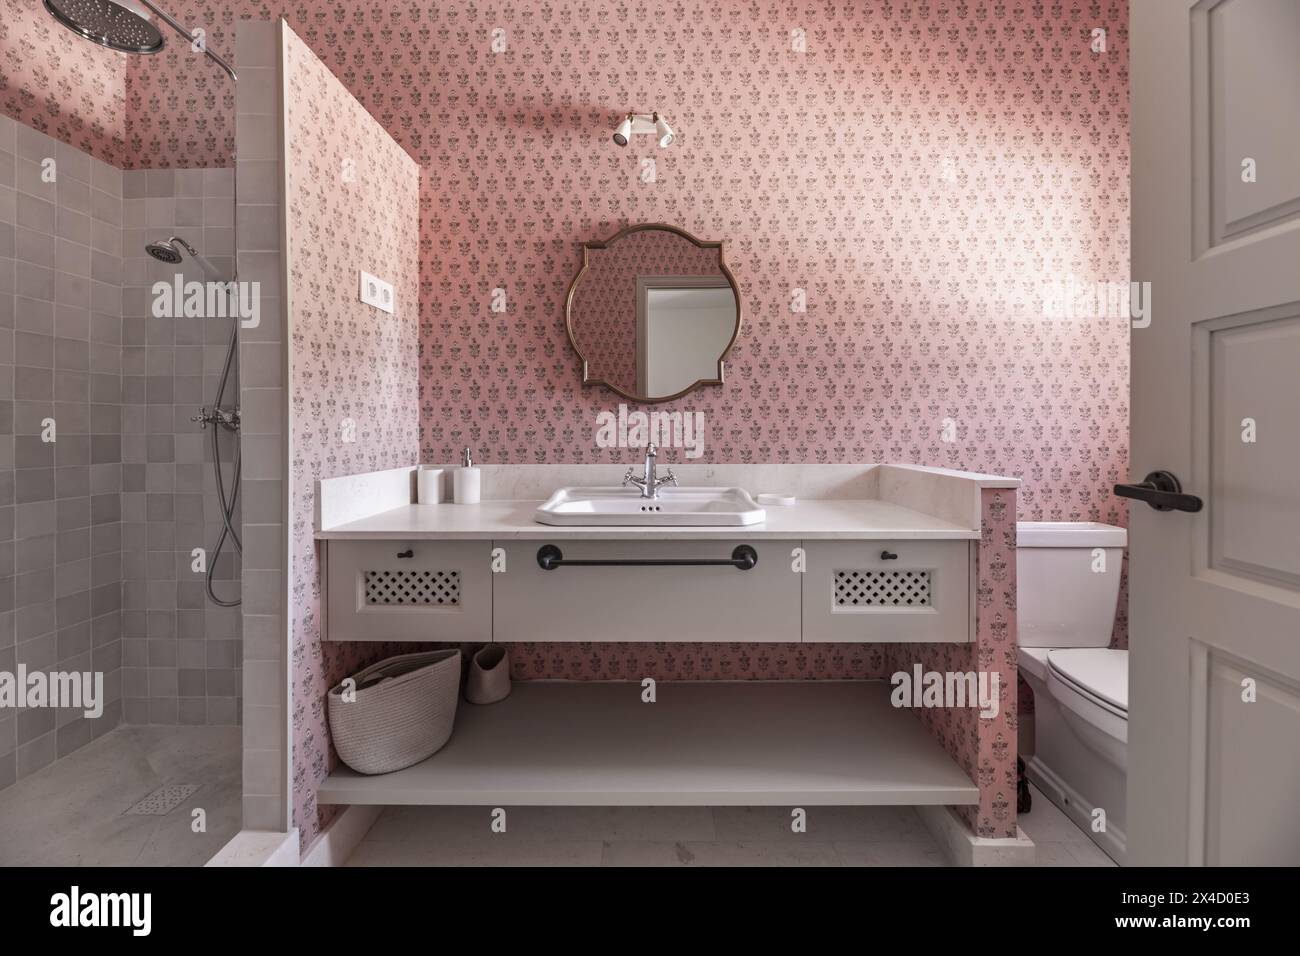 Un bellissimo bagno dal design moderno con lavandino in marmo color crema, specchio incorniciato in legno dorato, mobili e pareti coordinati con carta da parati rosa decorativa Foto Stock